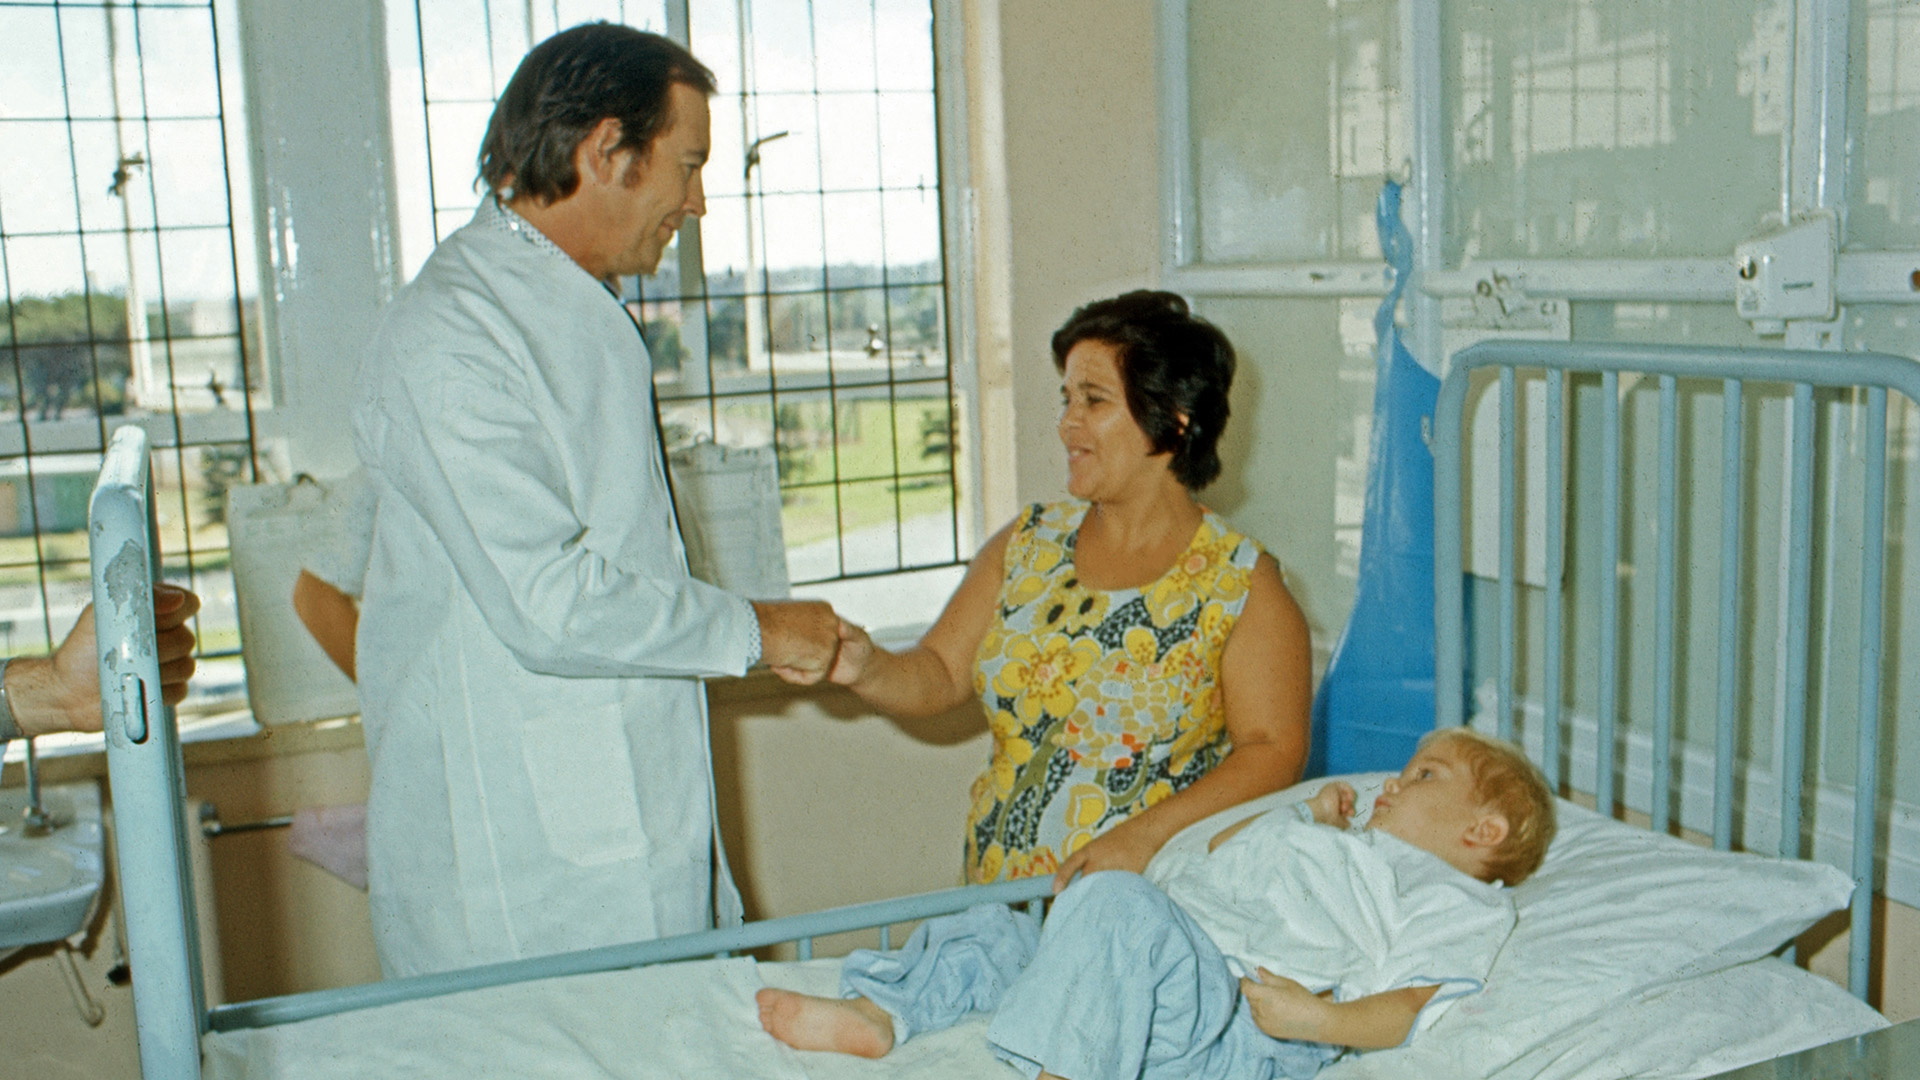 Una de las funciones de los talleres es promover la empatía, tanto con los pacientes como con sus familias (Wolfgang Kuhn/United Archives via Getty Images)